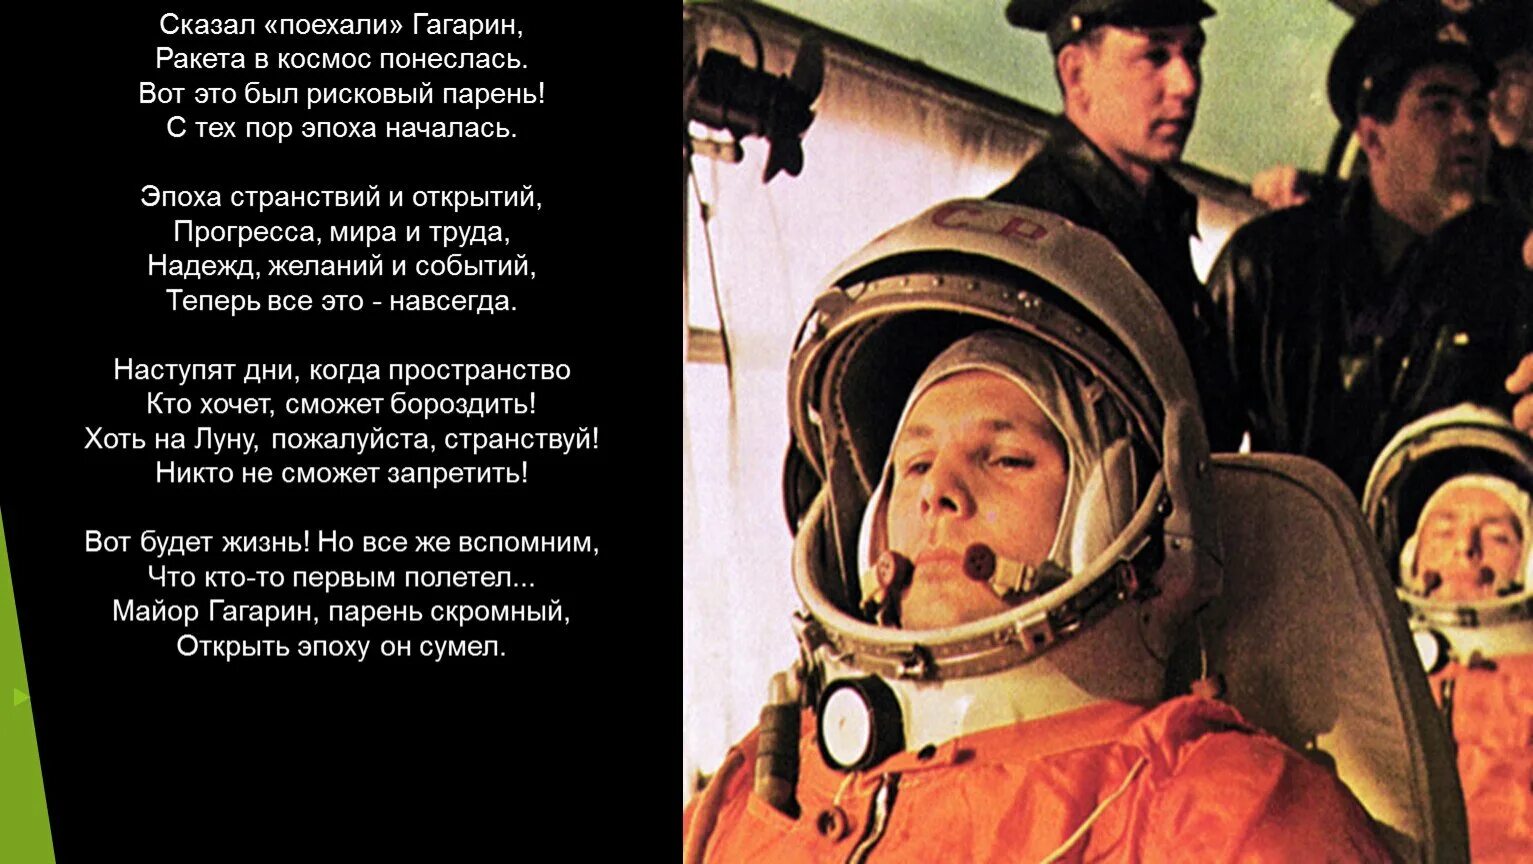 Про первый полет в космос гагарина. Он сказал поехали. Гагарин сказал поехали. Гагарин в космосе поехали.